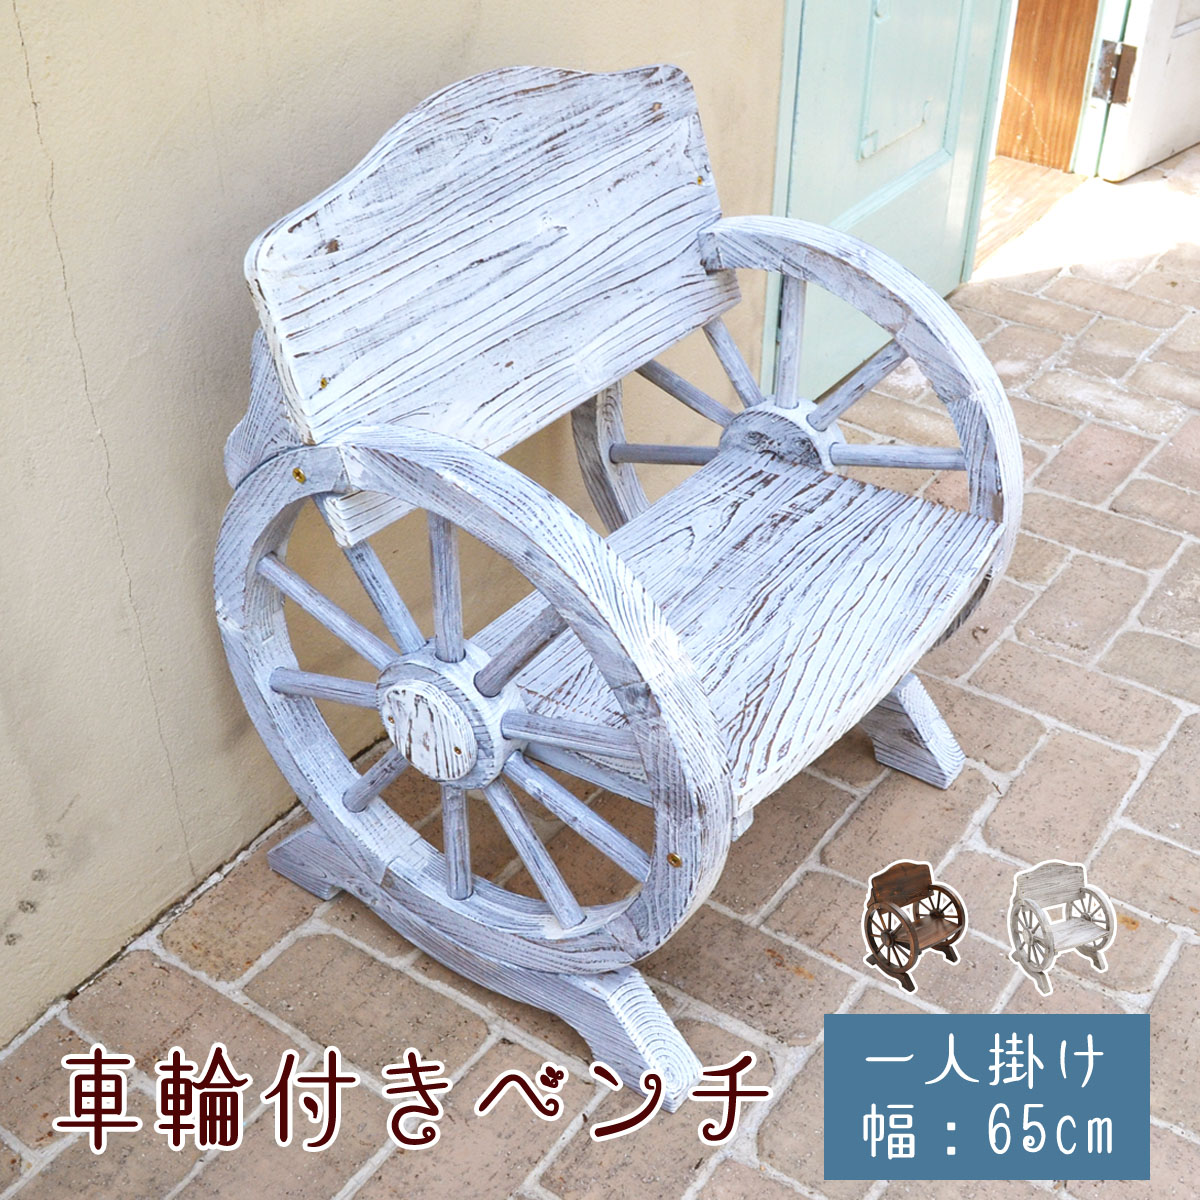 【楽天市場】車輪付きベンチ 1人掛け 1台 単品 ベンチ 木 背もたれ 庭